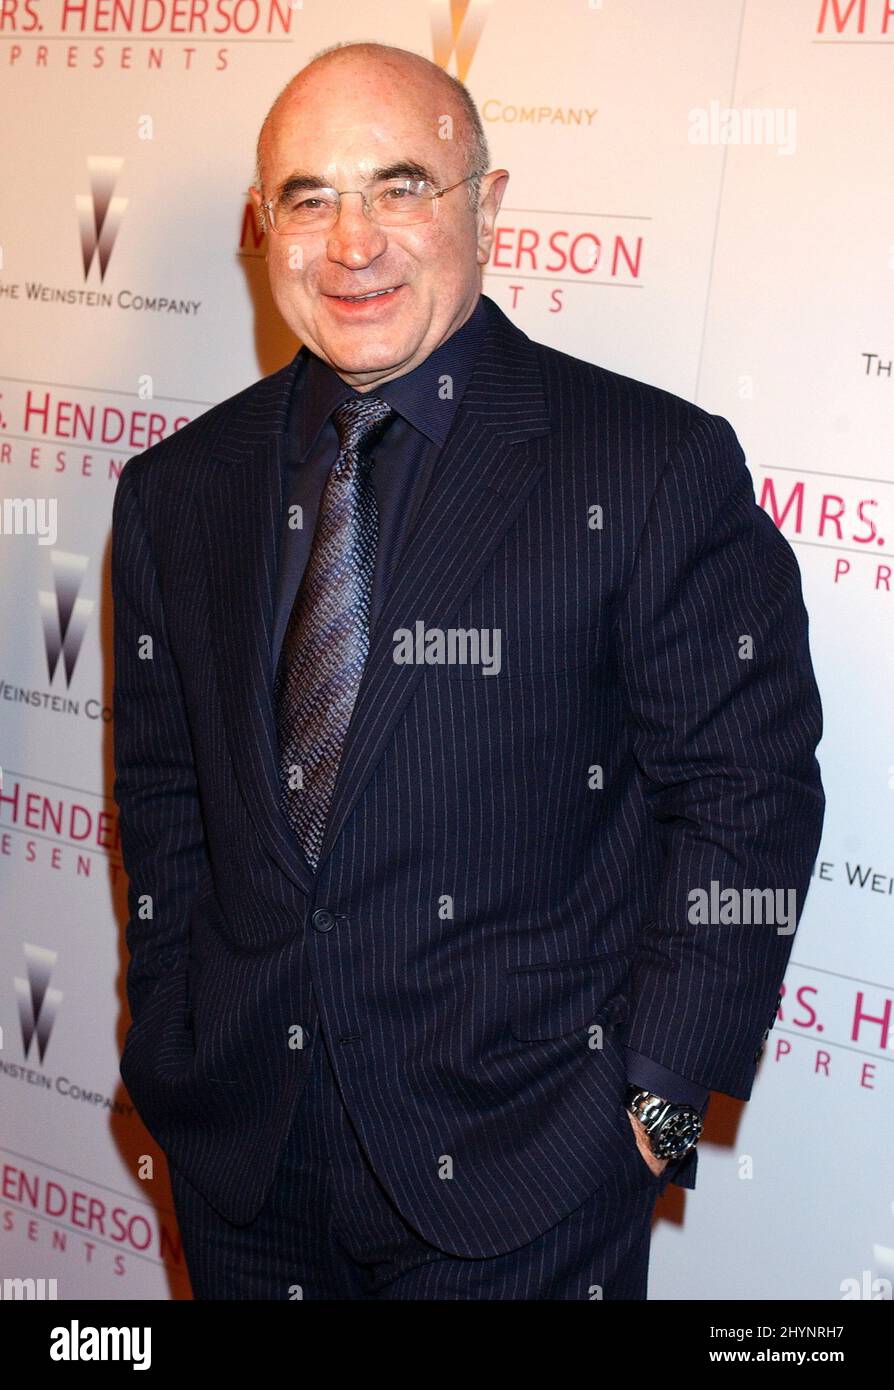 Bob Hoskins participe à la première de Los Angeles « Mrs Henderson Presents ». Photo : presse britannique Banque D'Images